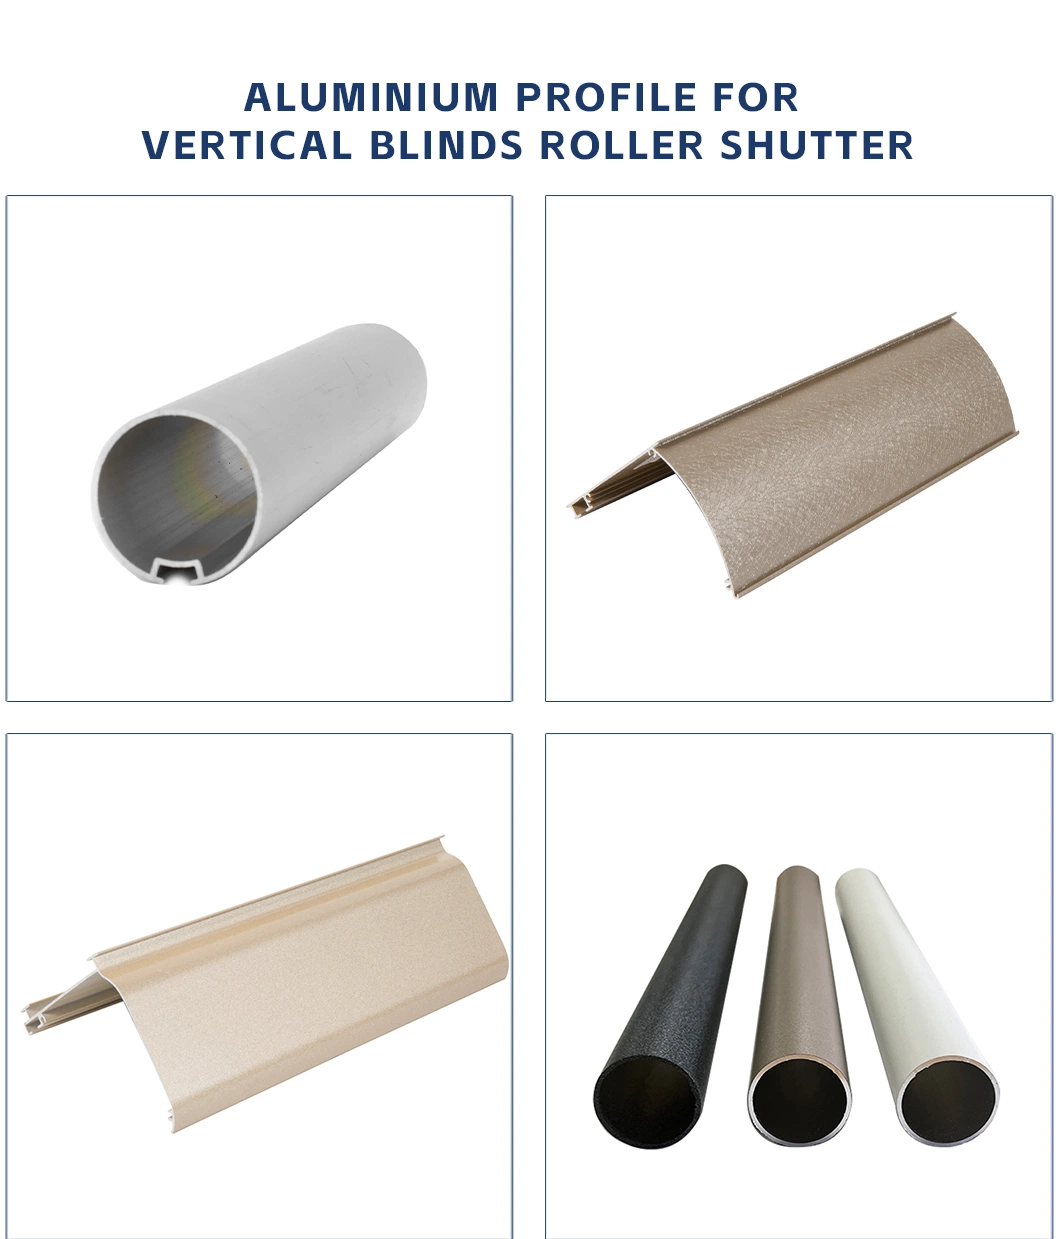 6063 Home Use Vertical Blind Custom Aluminum Venetian Blinds for Patio Shade Sliding